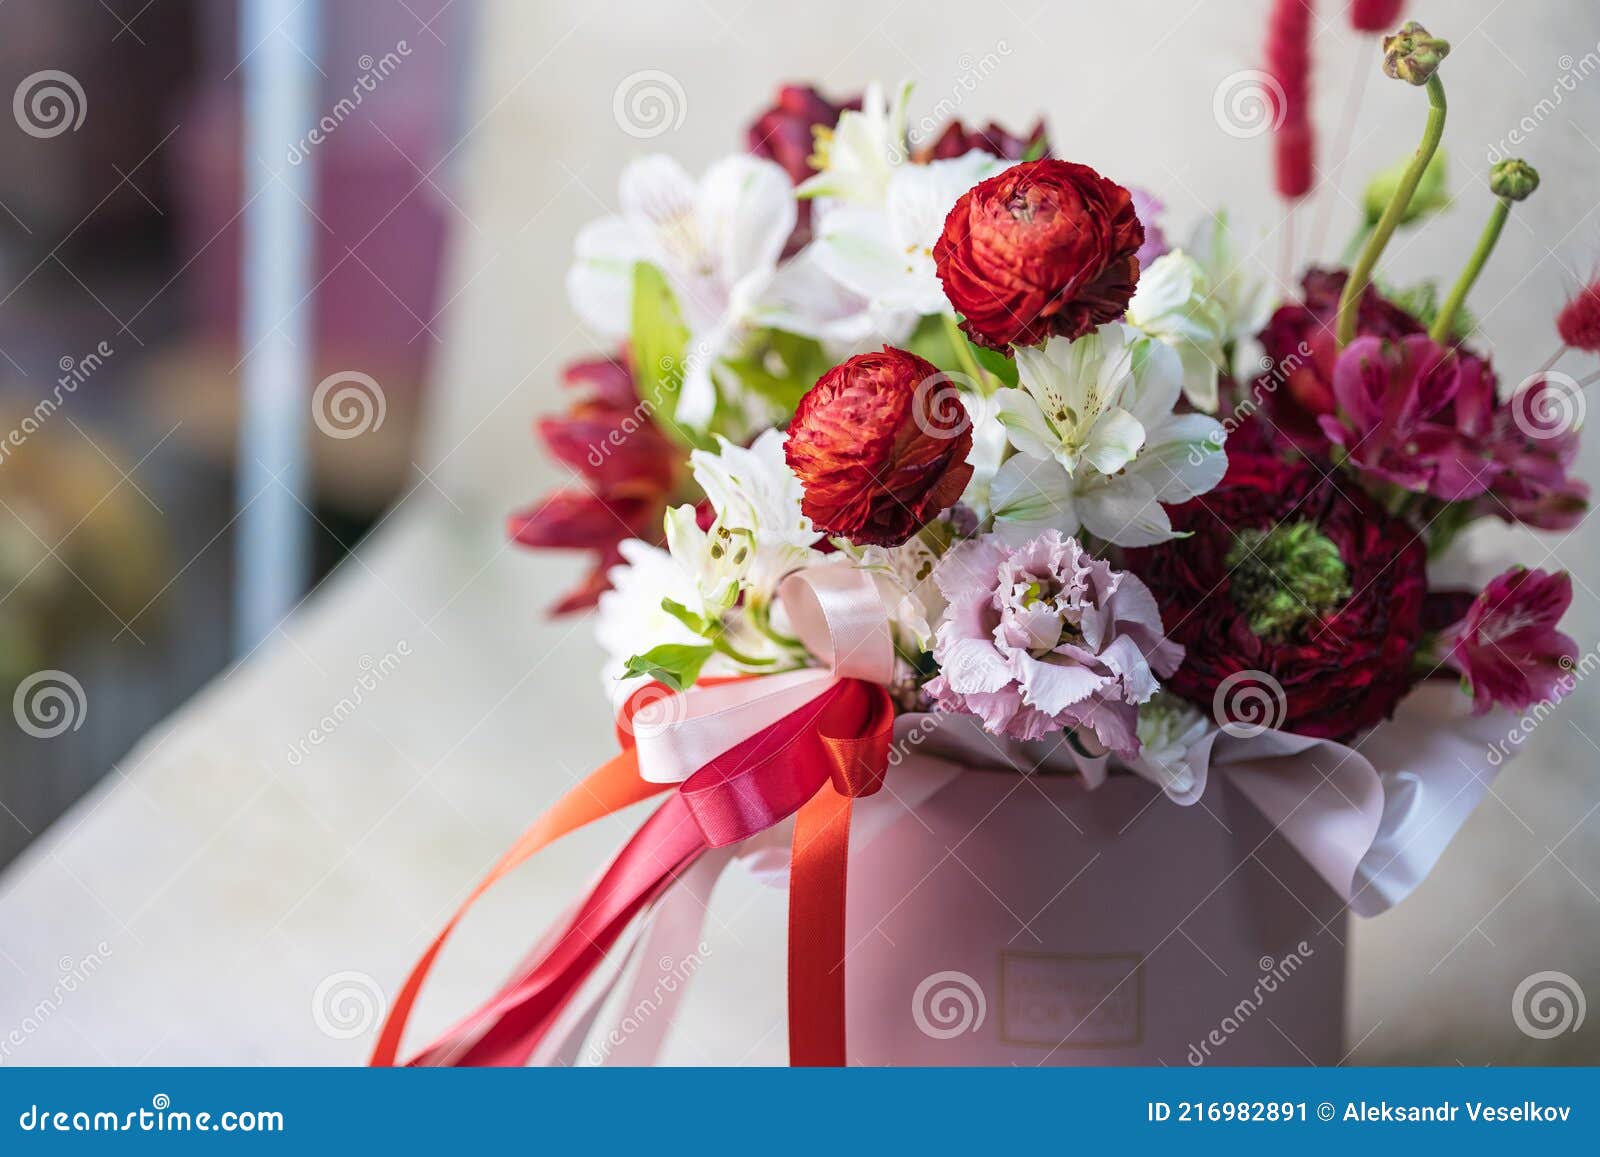 красно-белые разные цветы в круглой розовой вазе с блестящими лентами.концепция подарка. Стоковое Изображение - изображение насчитывающей флора,флорист: 216982891